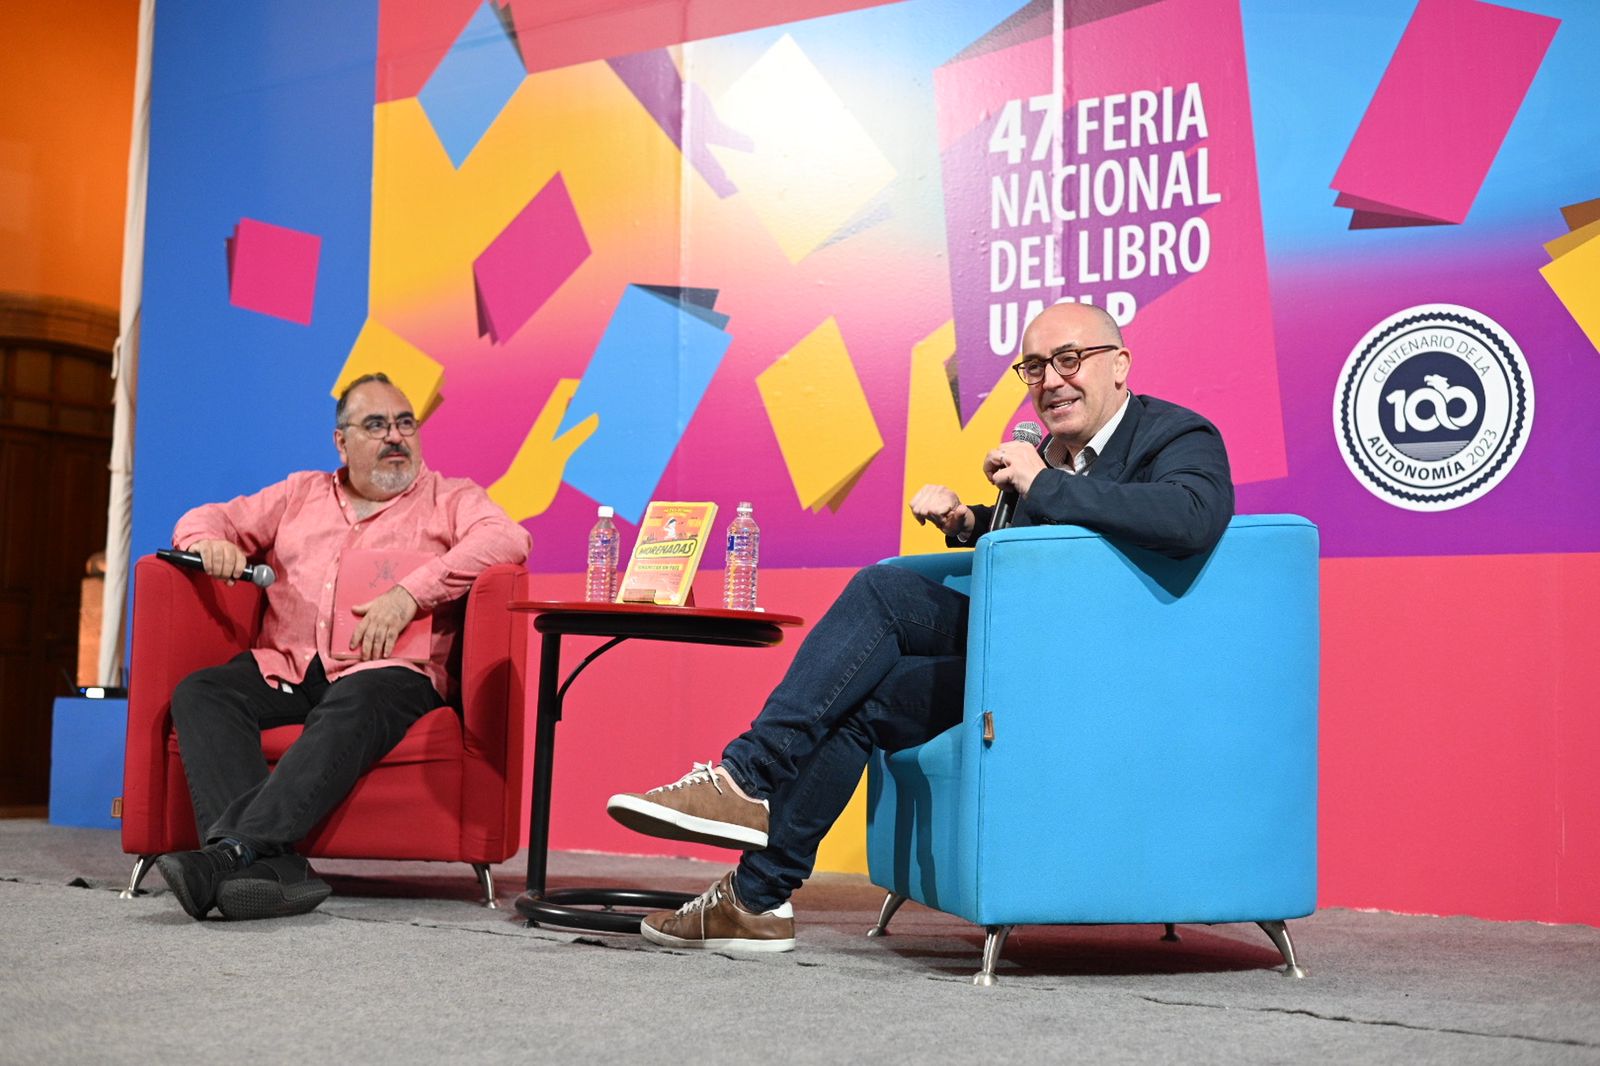 Julio Patán y Alejandro Rosas presentaron su libro “Morenadas” en la 47 Feria Nacional del Libro UASLP